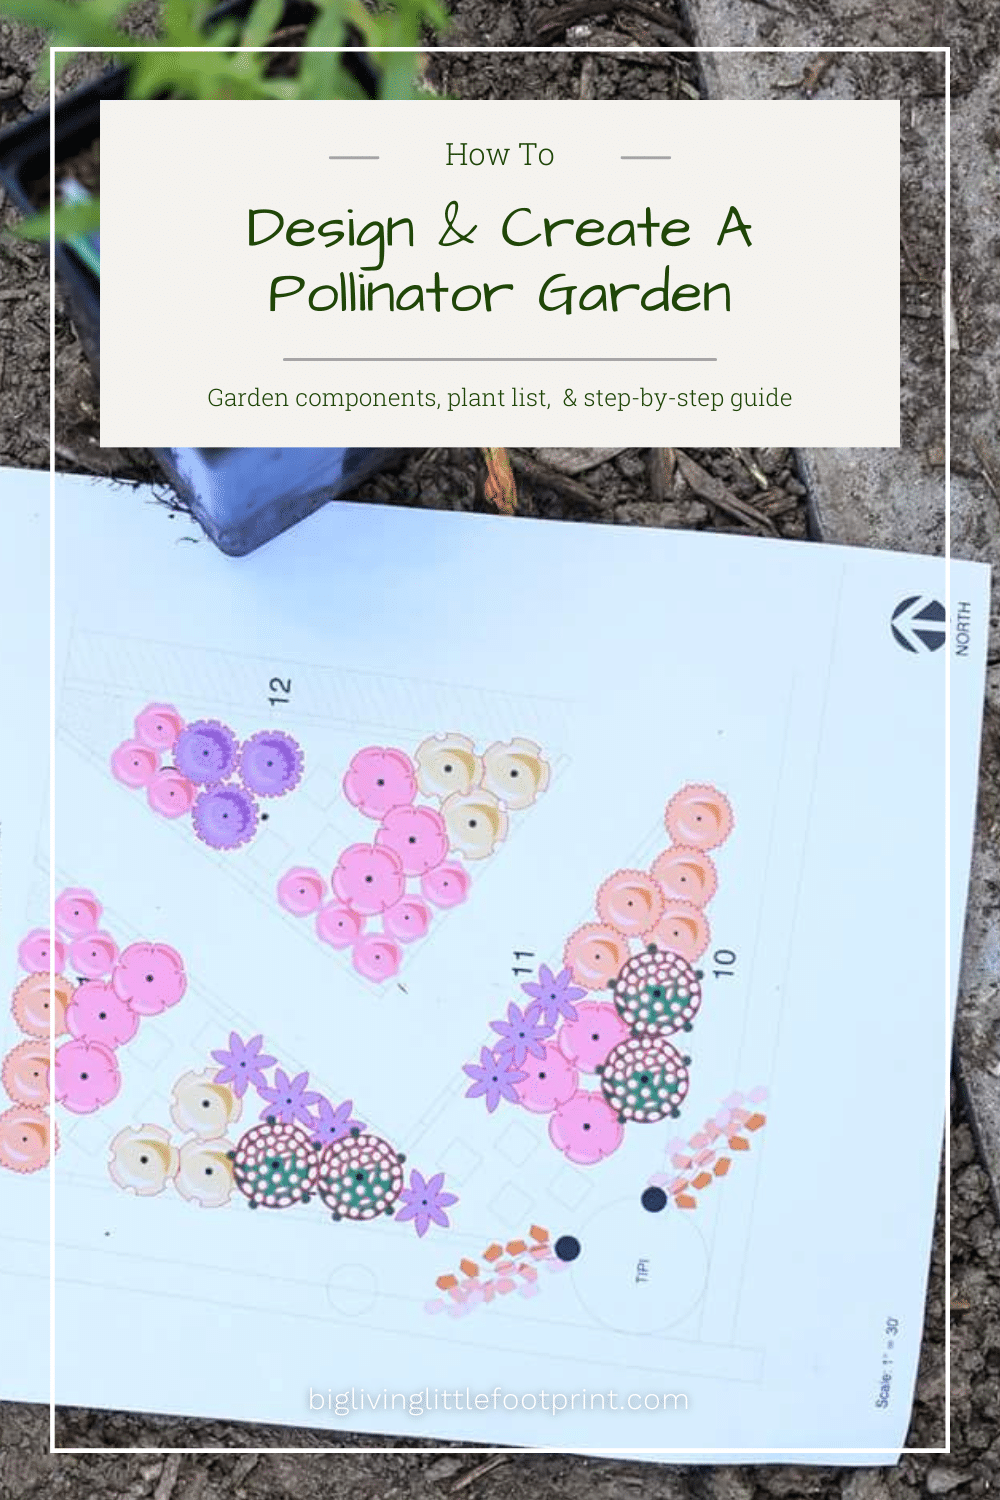 How To Design & Create A Pollinator Garden